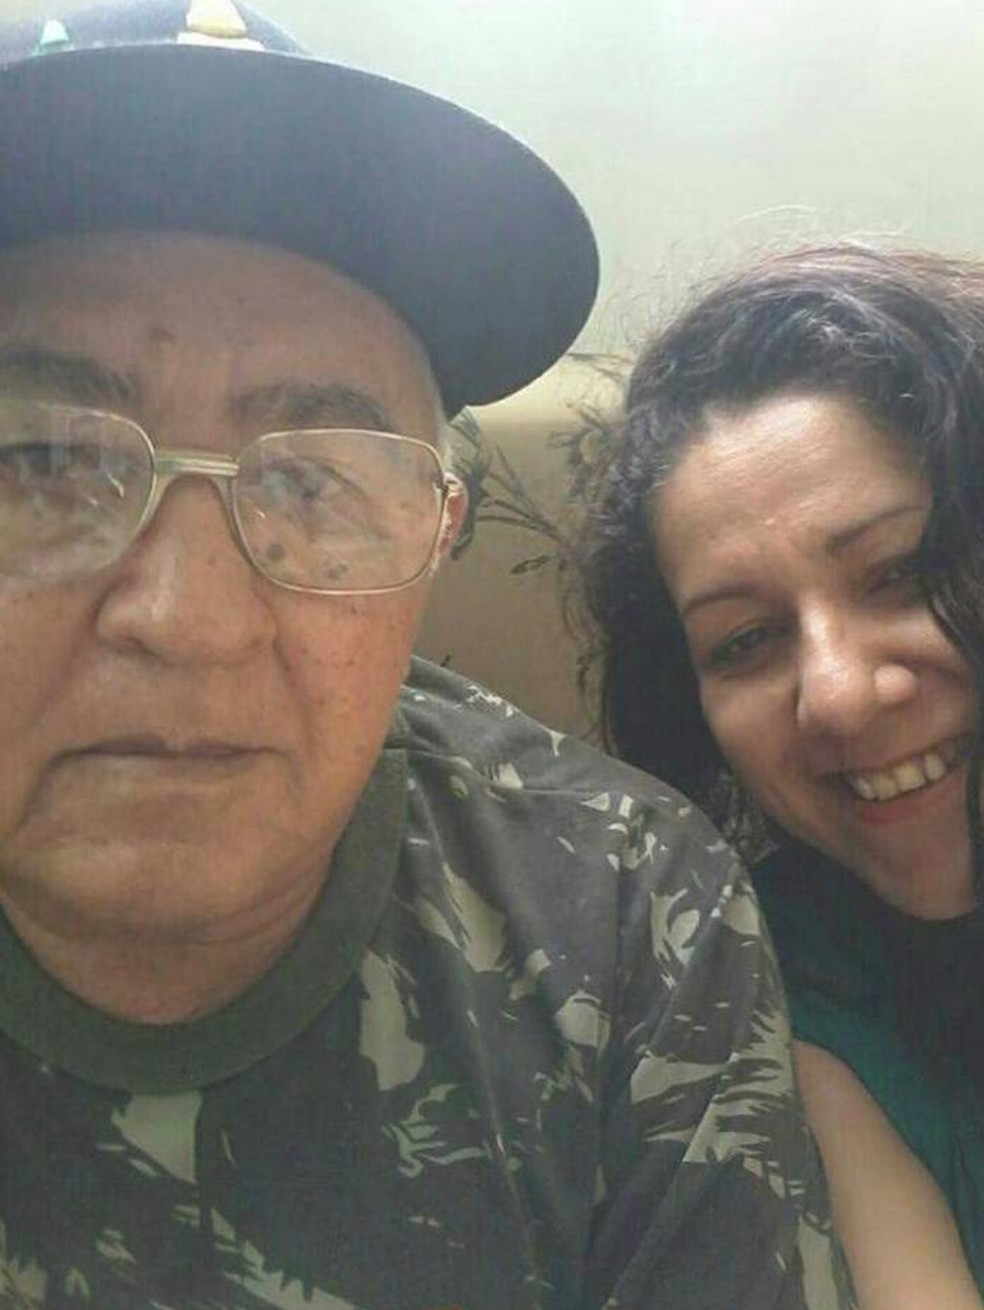 Pai de Joselita, Francisco Félix, diz que sente muita saudade da filha, que foi morta a pauladas em Rondônia. — Foto: Arquivo pessoal